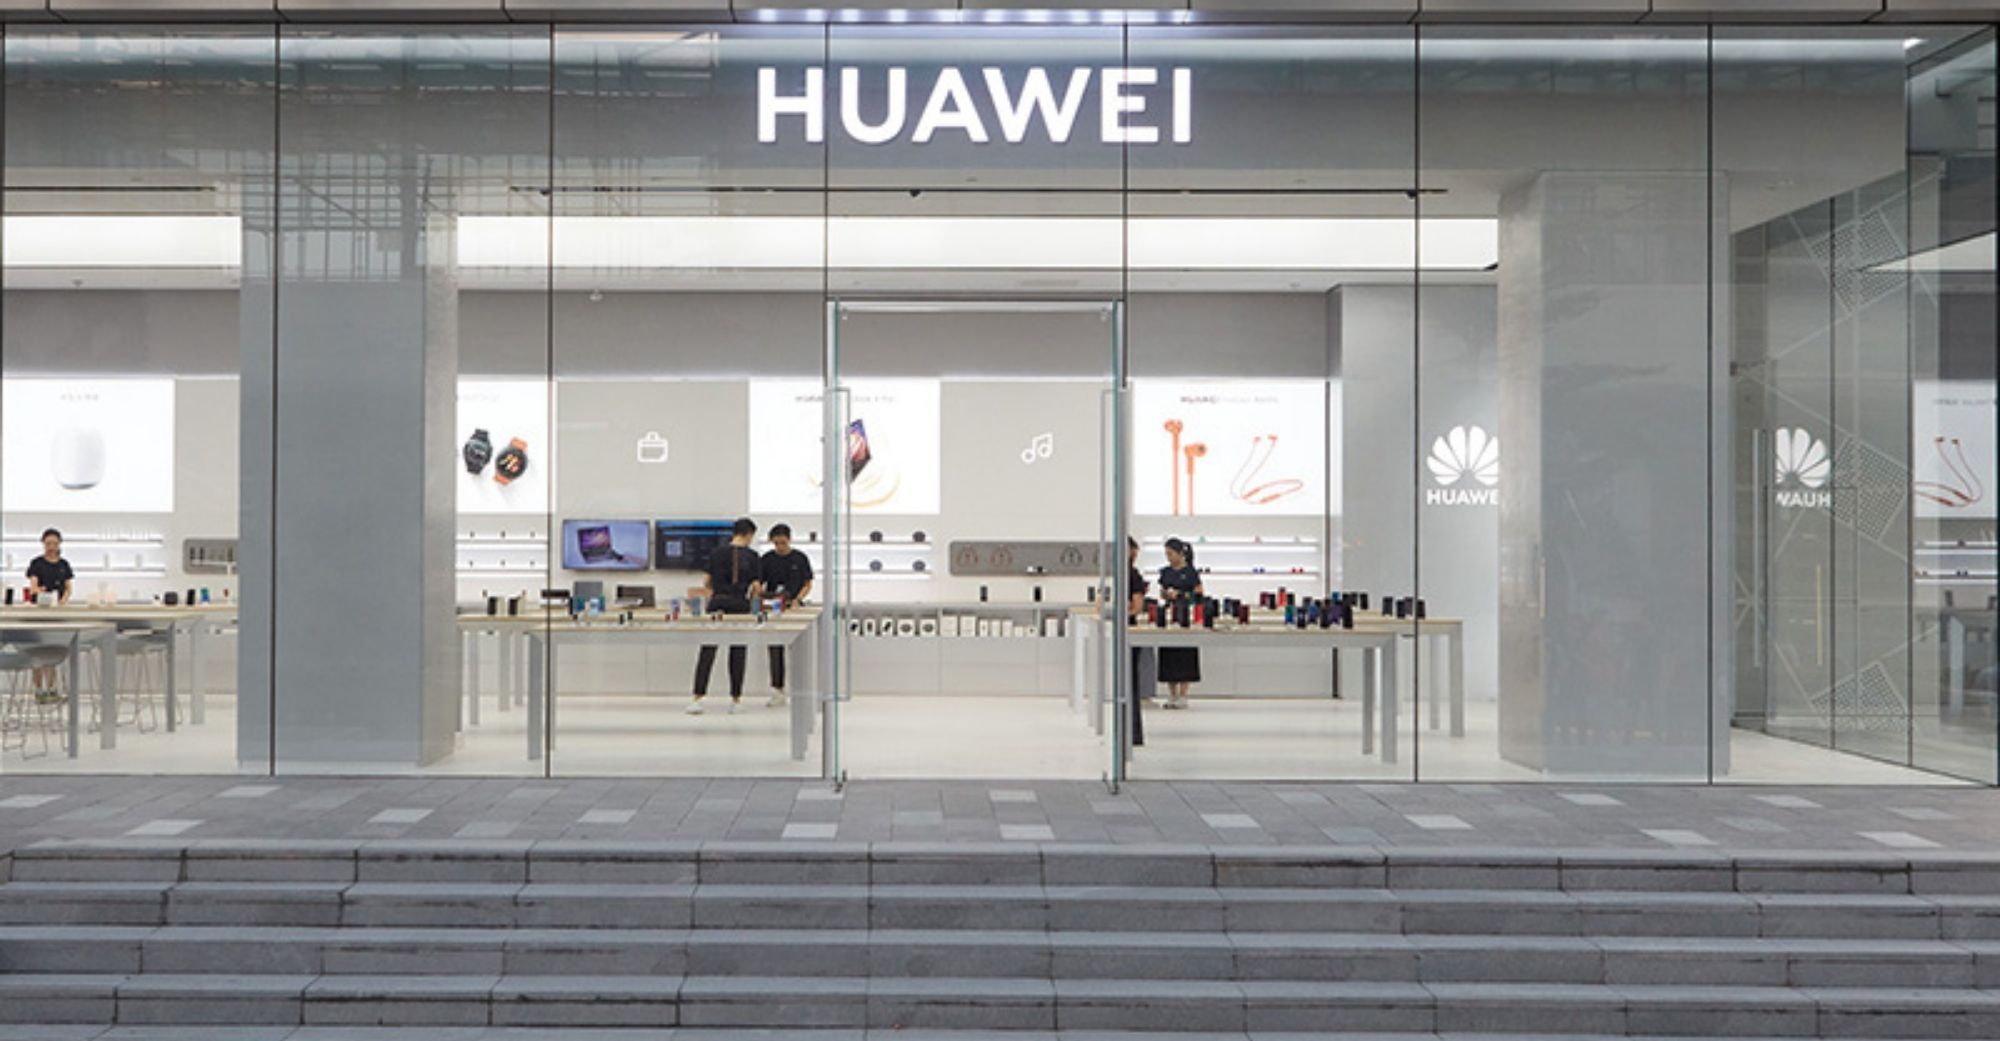 Itinanggi ng Huawei ang mga alingawngaw ng mga de-koryenteng sasakyan at tutulungan ang mga tagagawa na baguhin